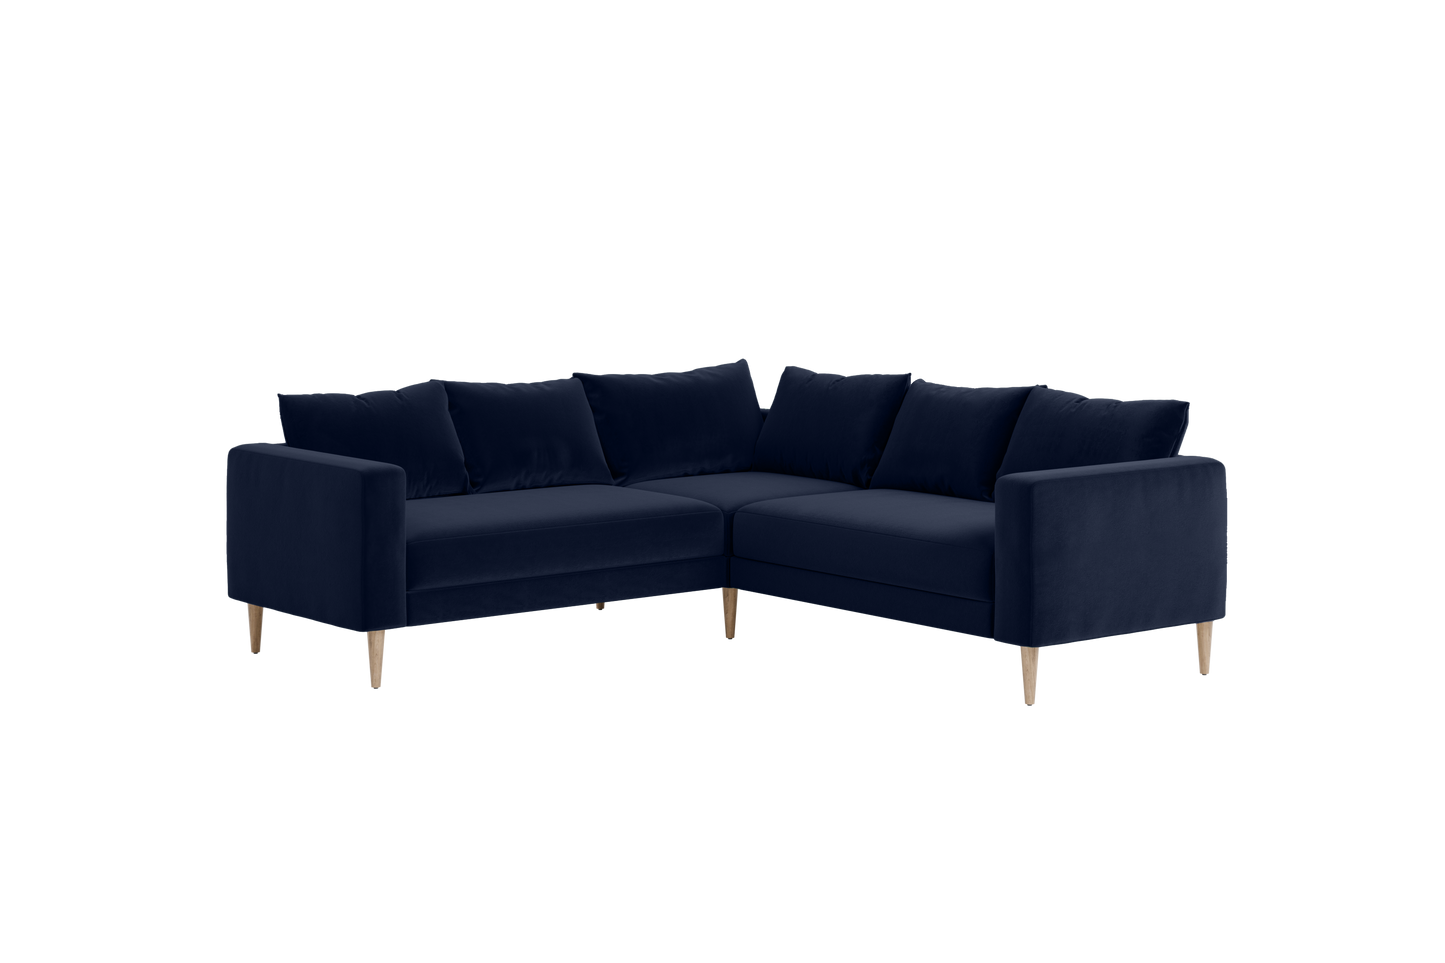 The Essential Corner (5 Seat) Sofa